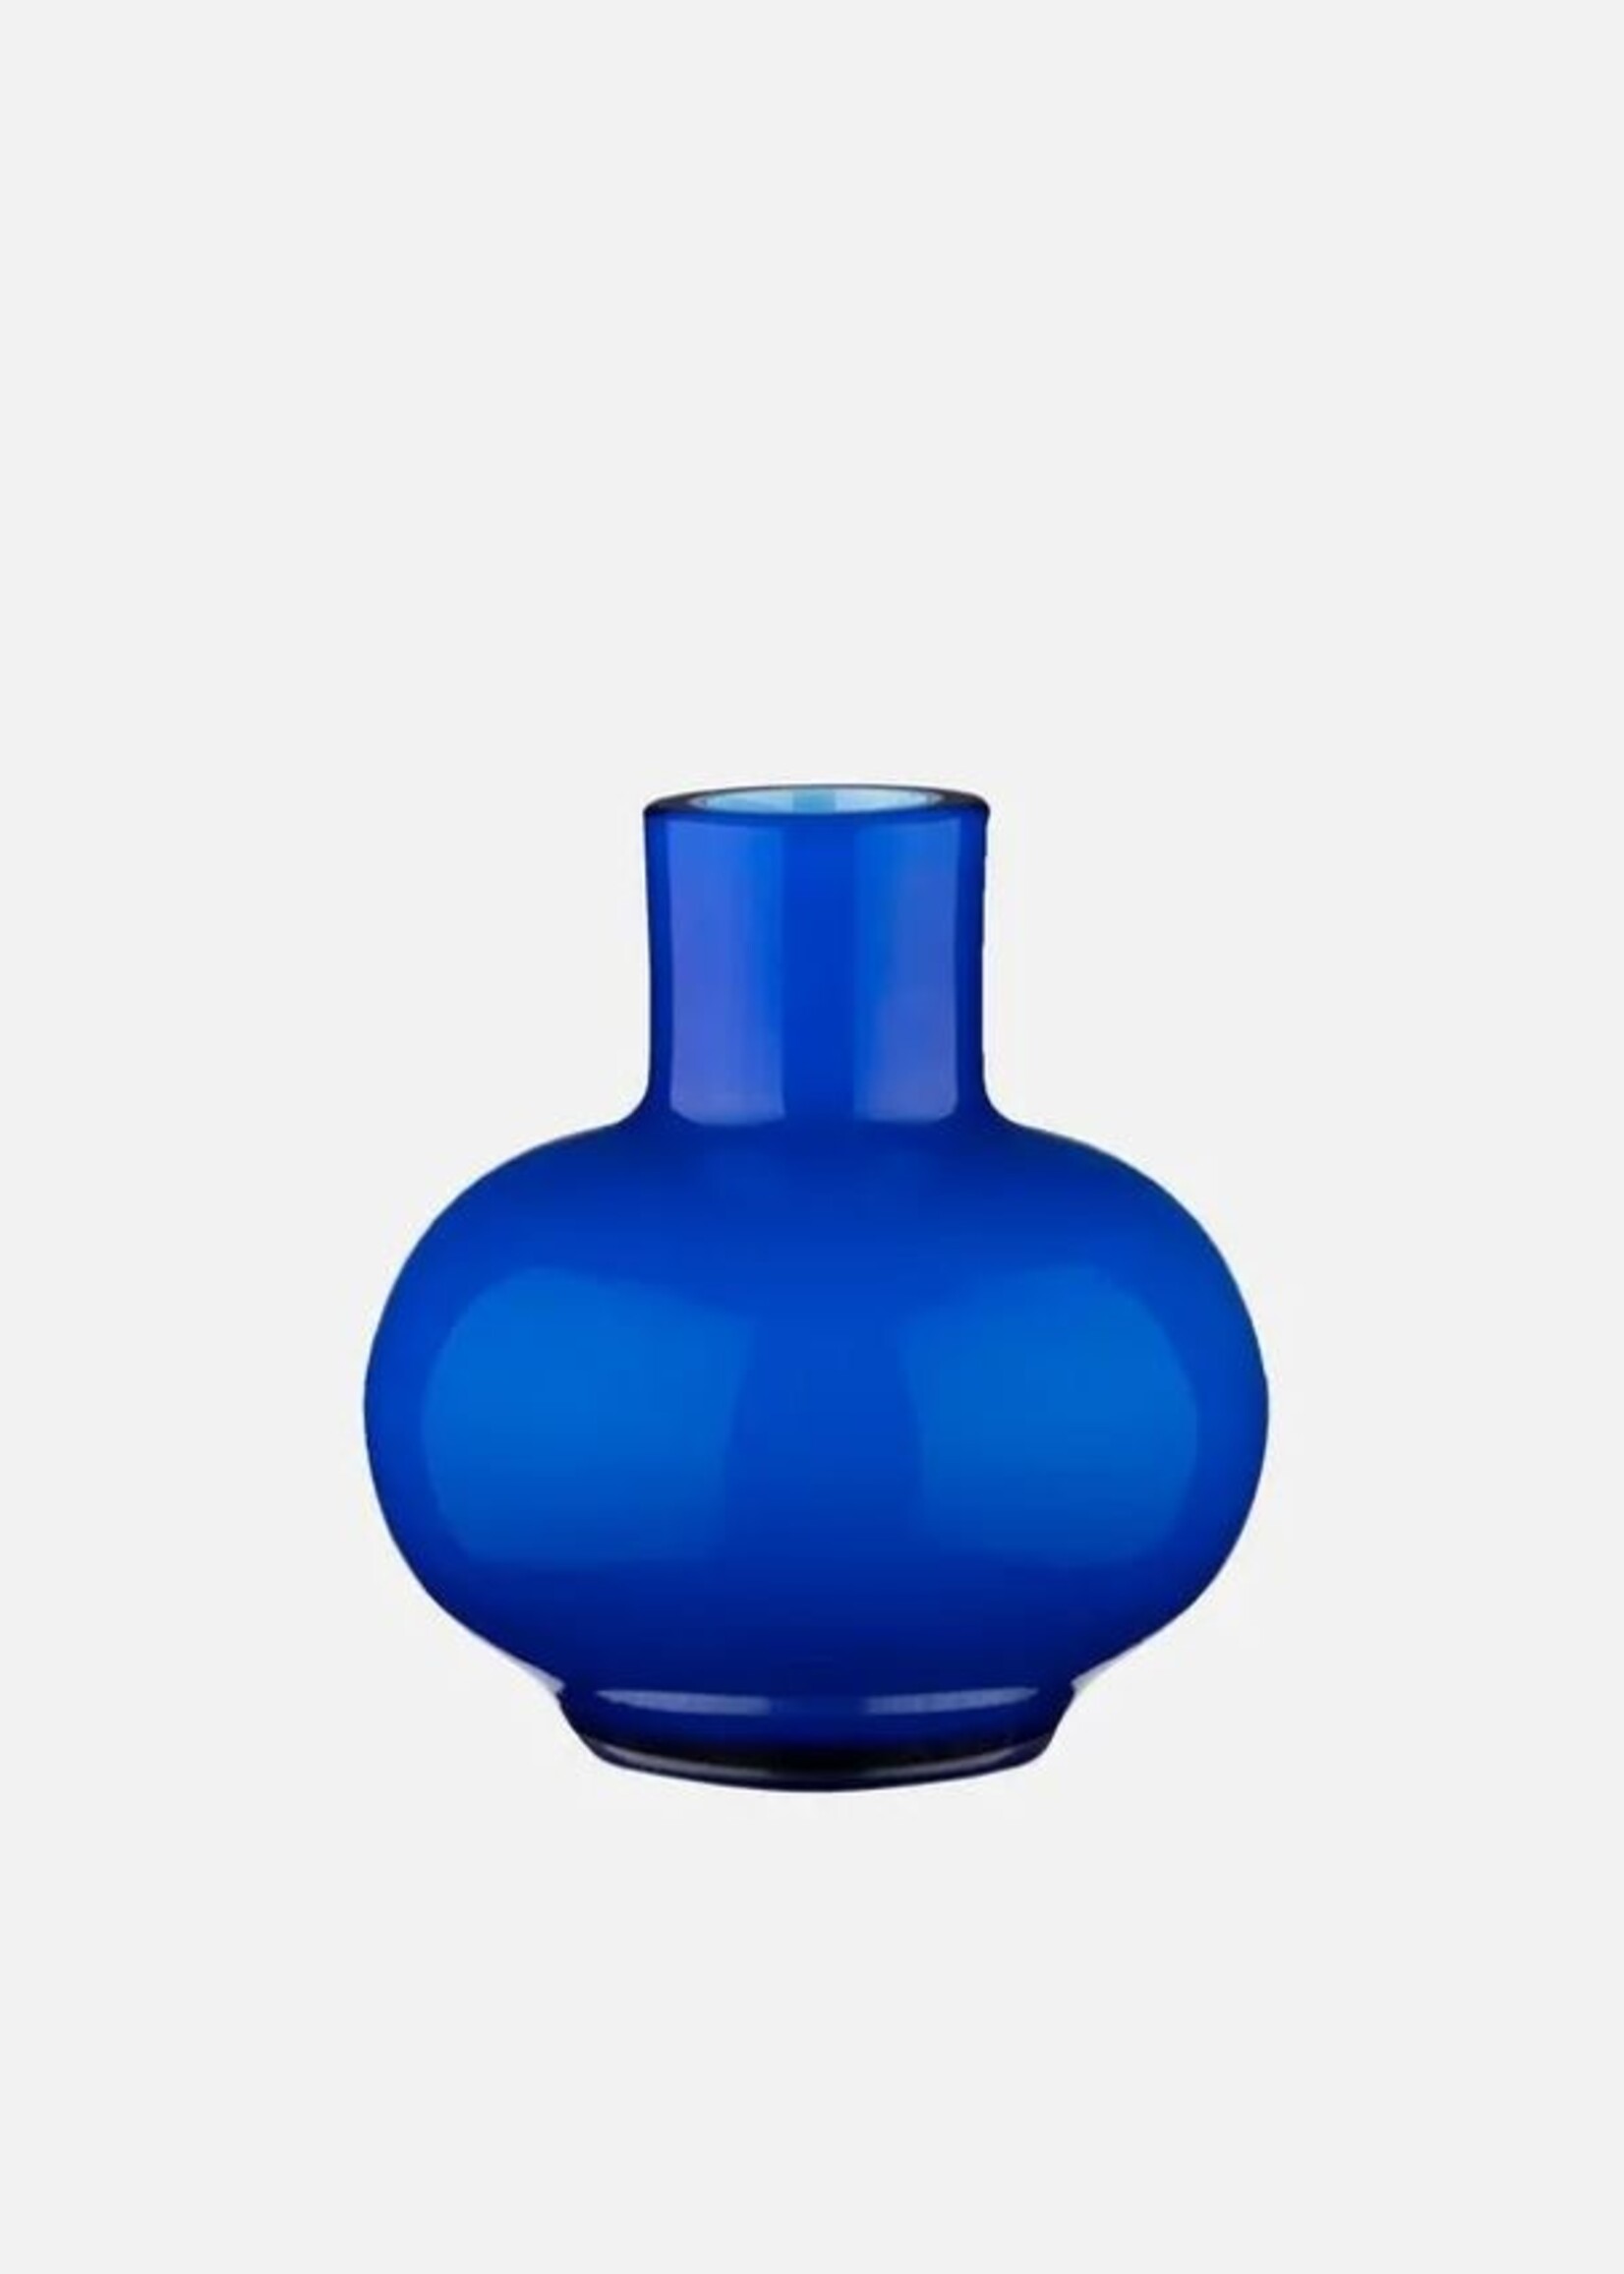 Marimekko Marimekko - MINI - Vase - Bleu - 6cm